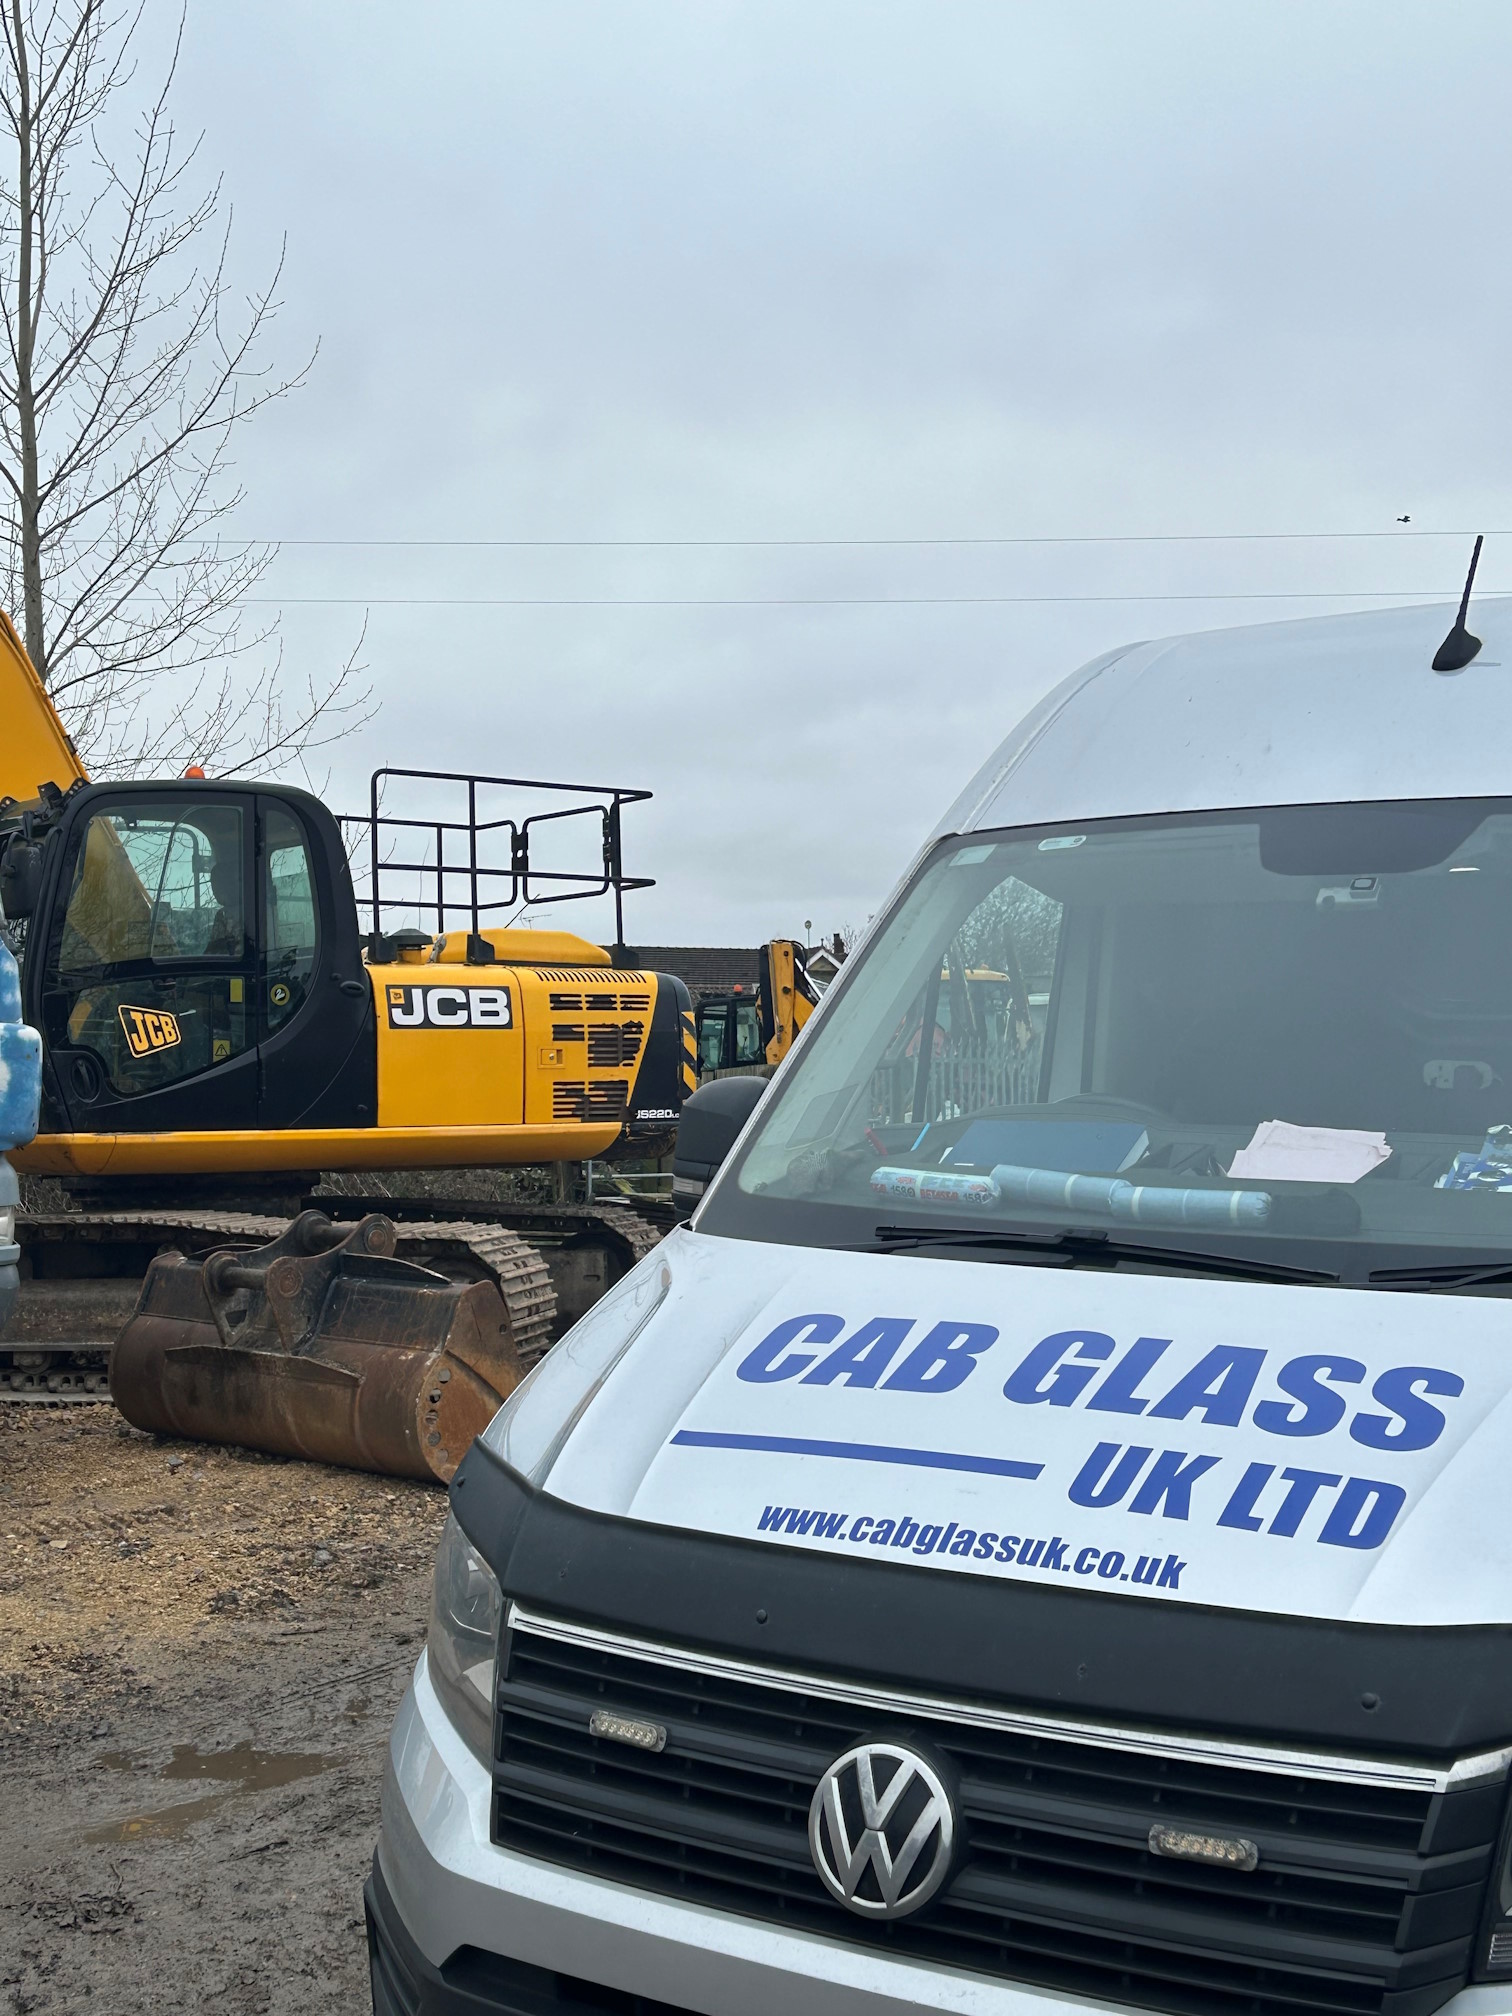 Cab Glass UK company van next to a digger